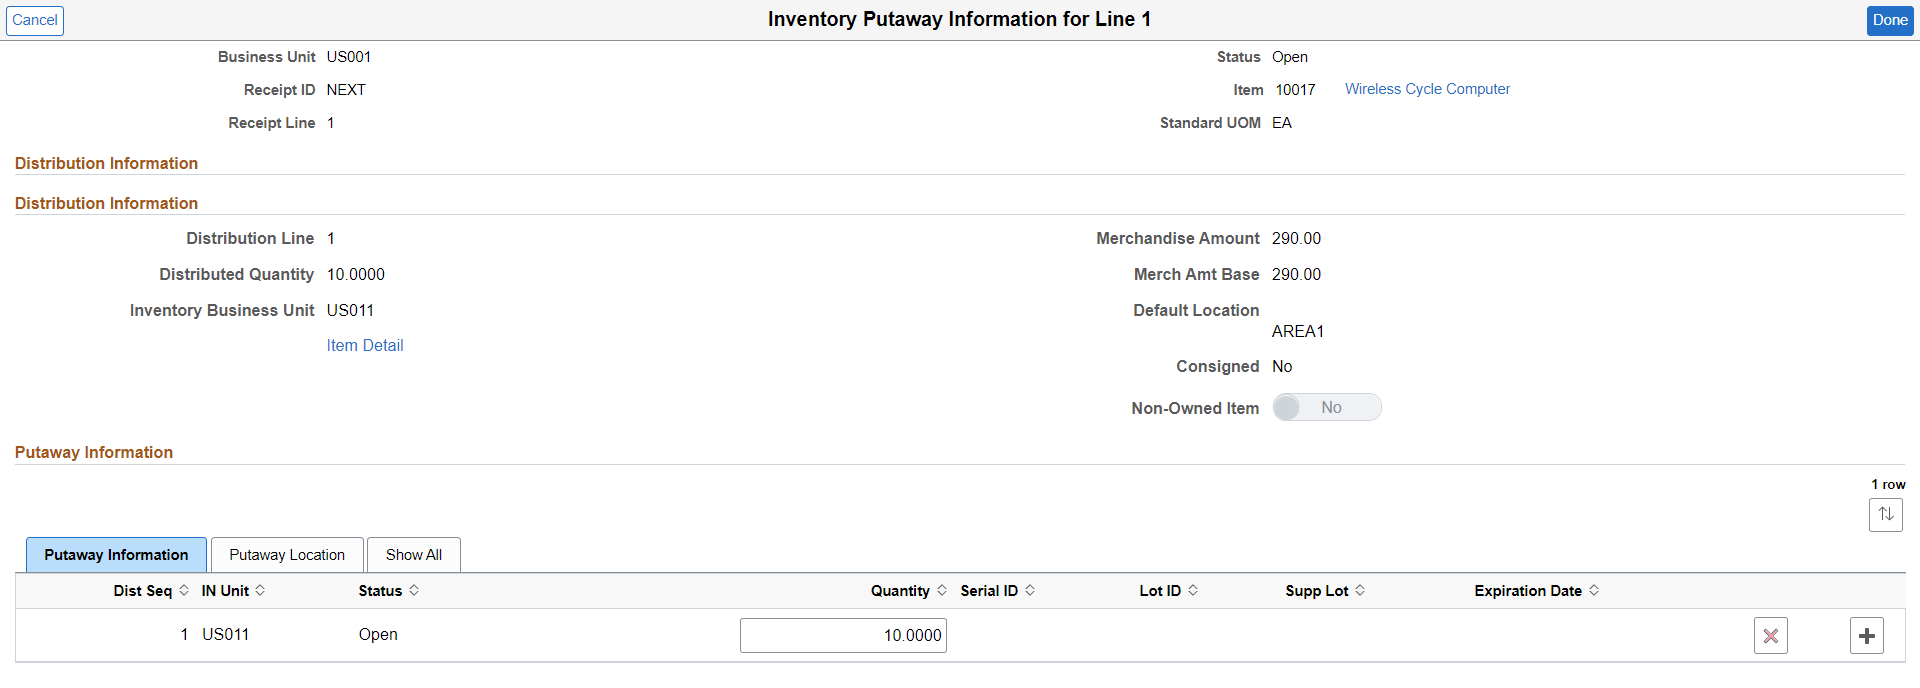 Inventory Putaway Information - Putaway Information tab